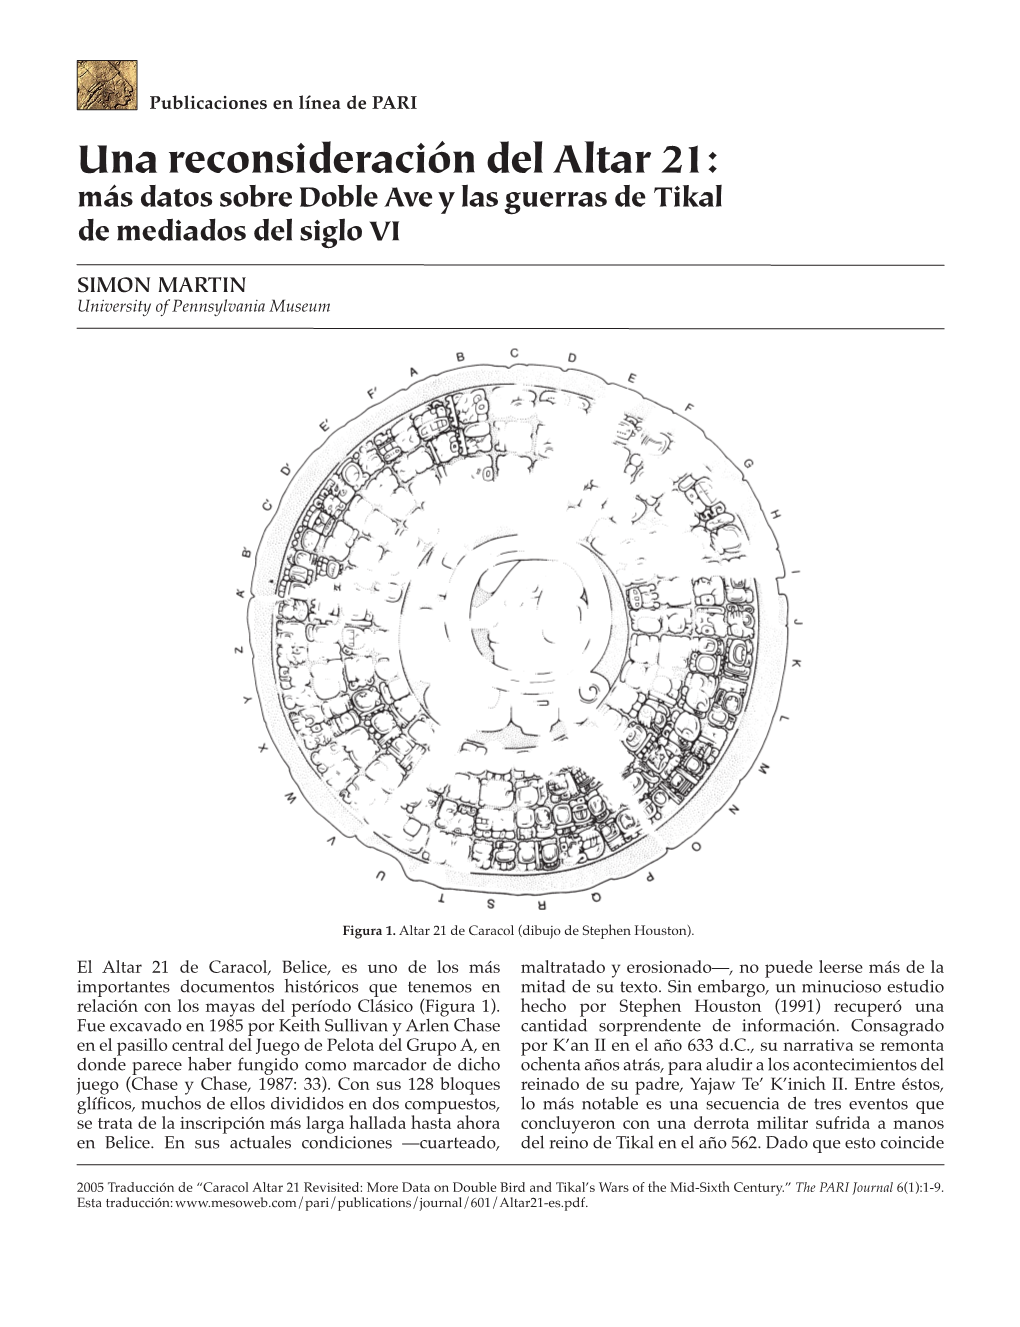 Una Reconsideración Del Altar 21: Más Datos Sobre Doble Ave Y Las Guerras De Tikal De Mediados Del Siglo VI